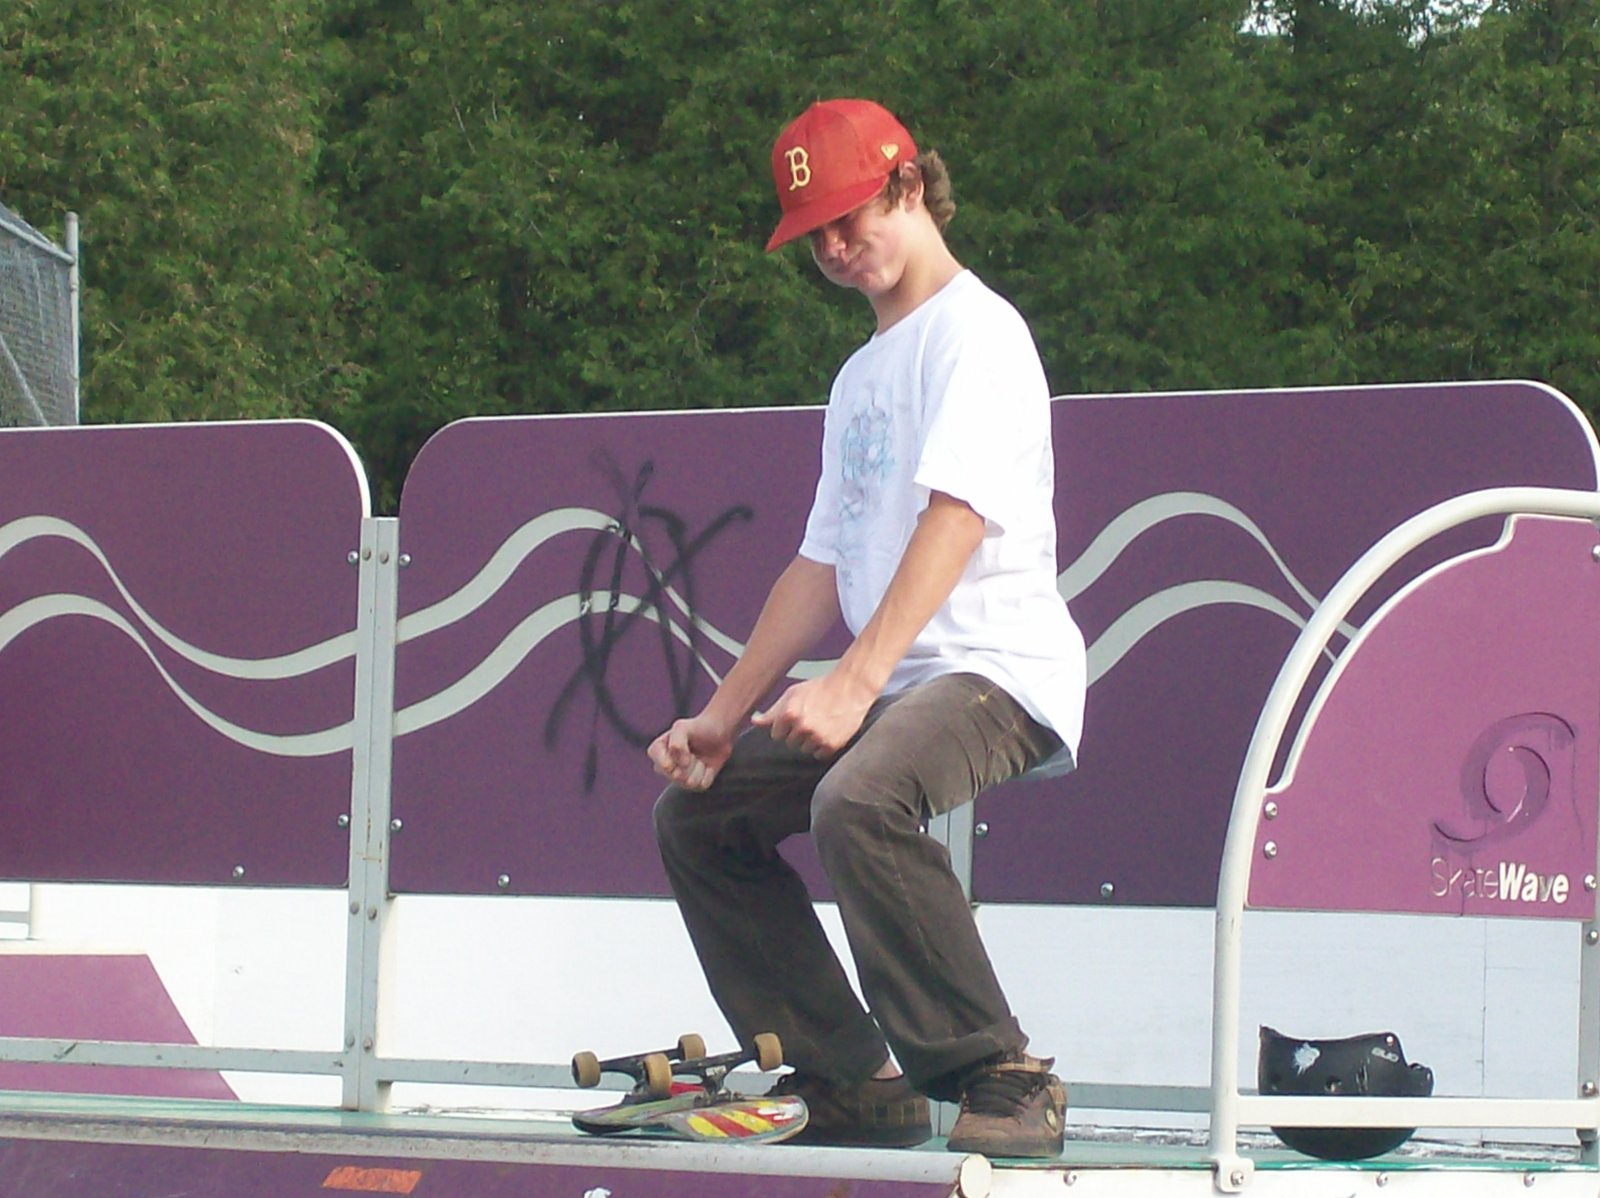 Skateboarding is my summer sport.